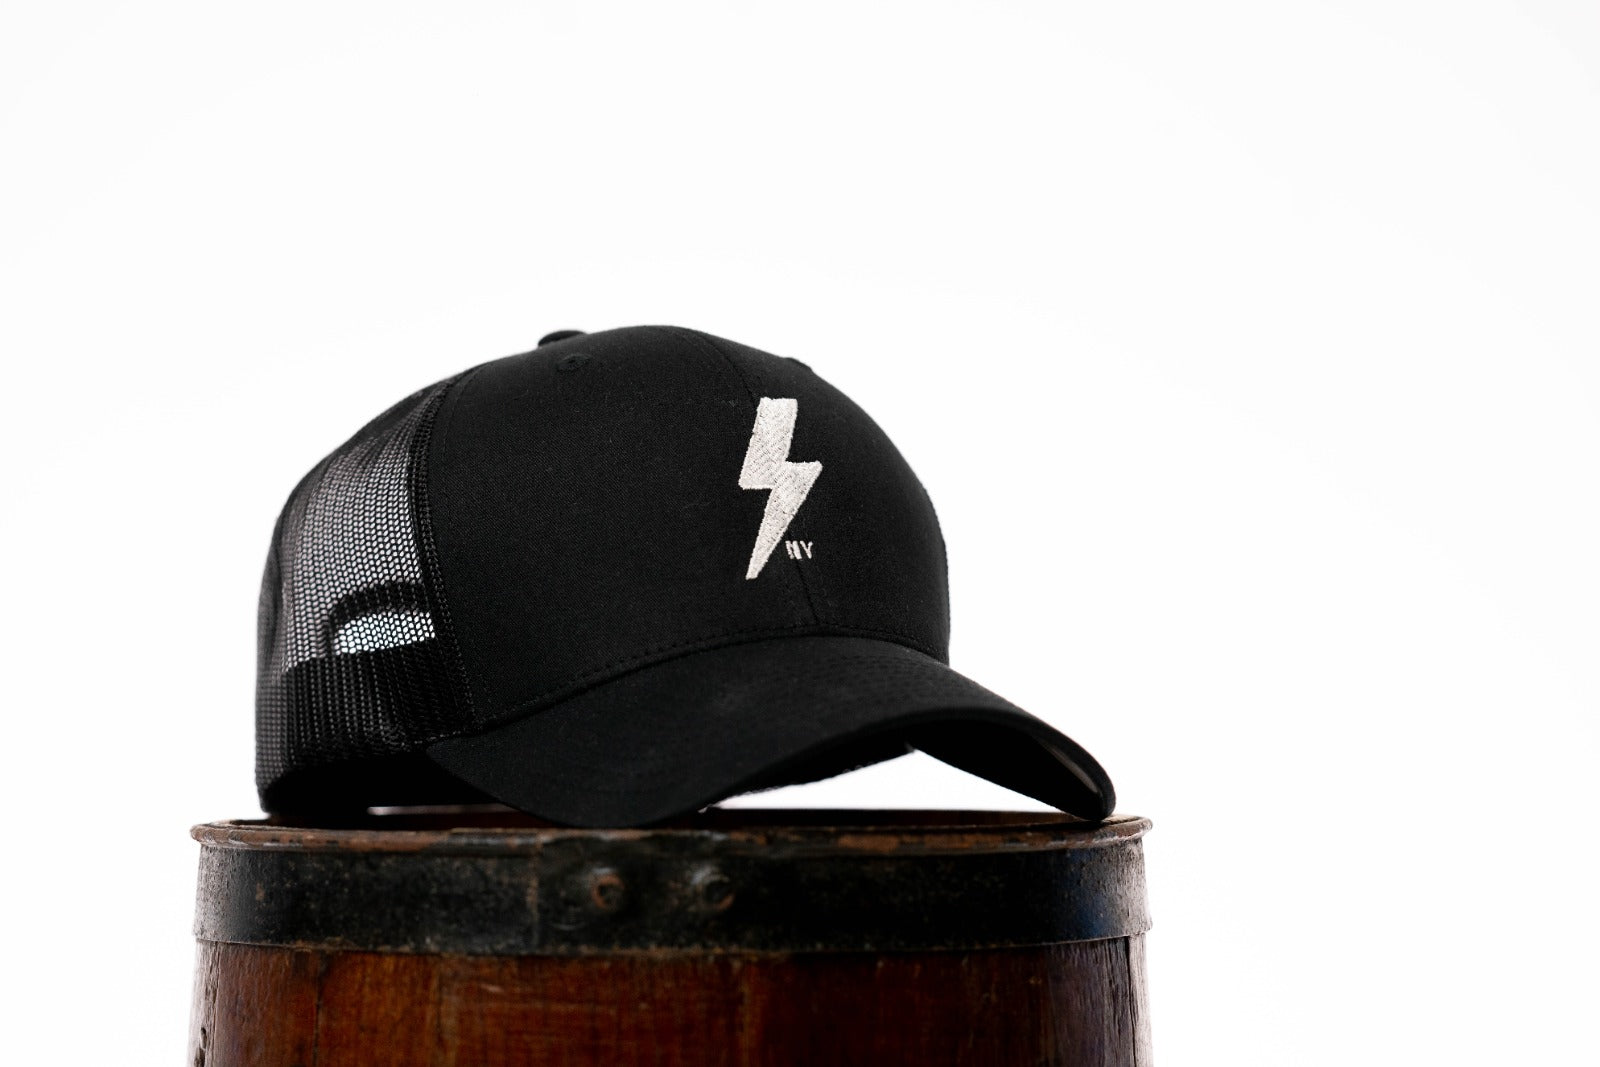 Trucker hat, LAB309 trucker hats, lab309 trucker hat, lucky seven caps, lucky seven hat, lucky seven trucker hat, lightning bolt trucker hat 